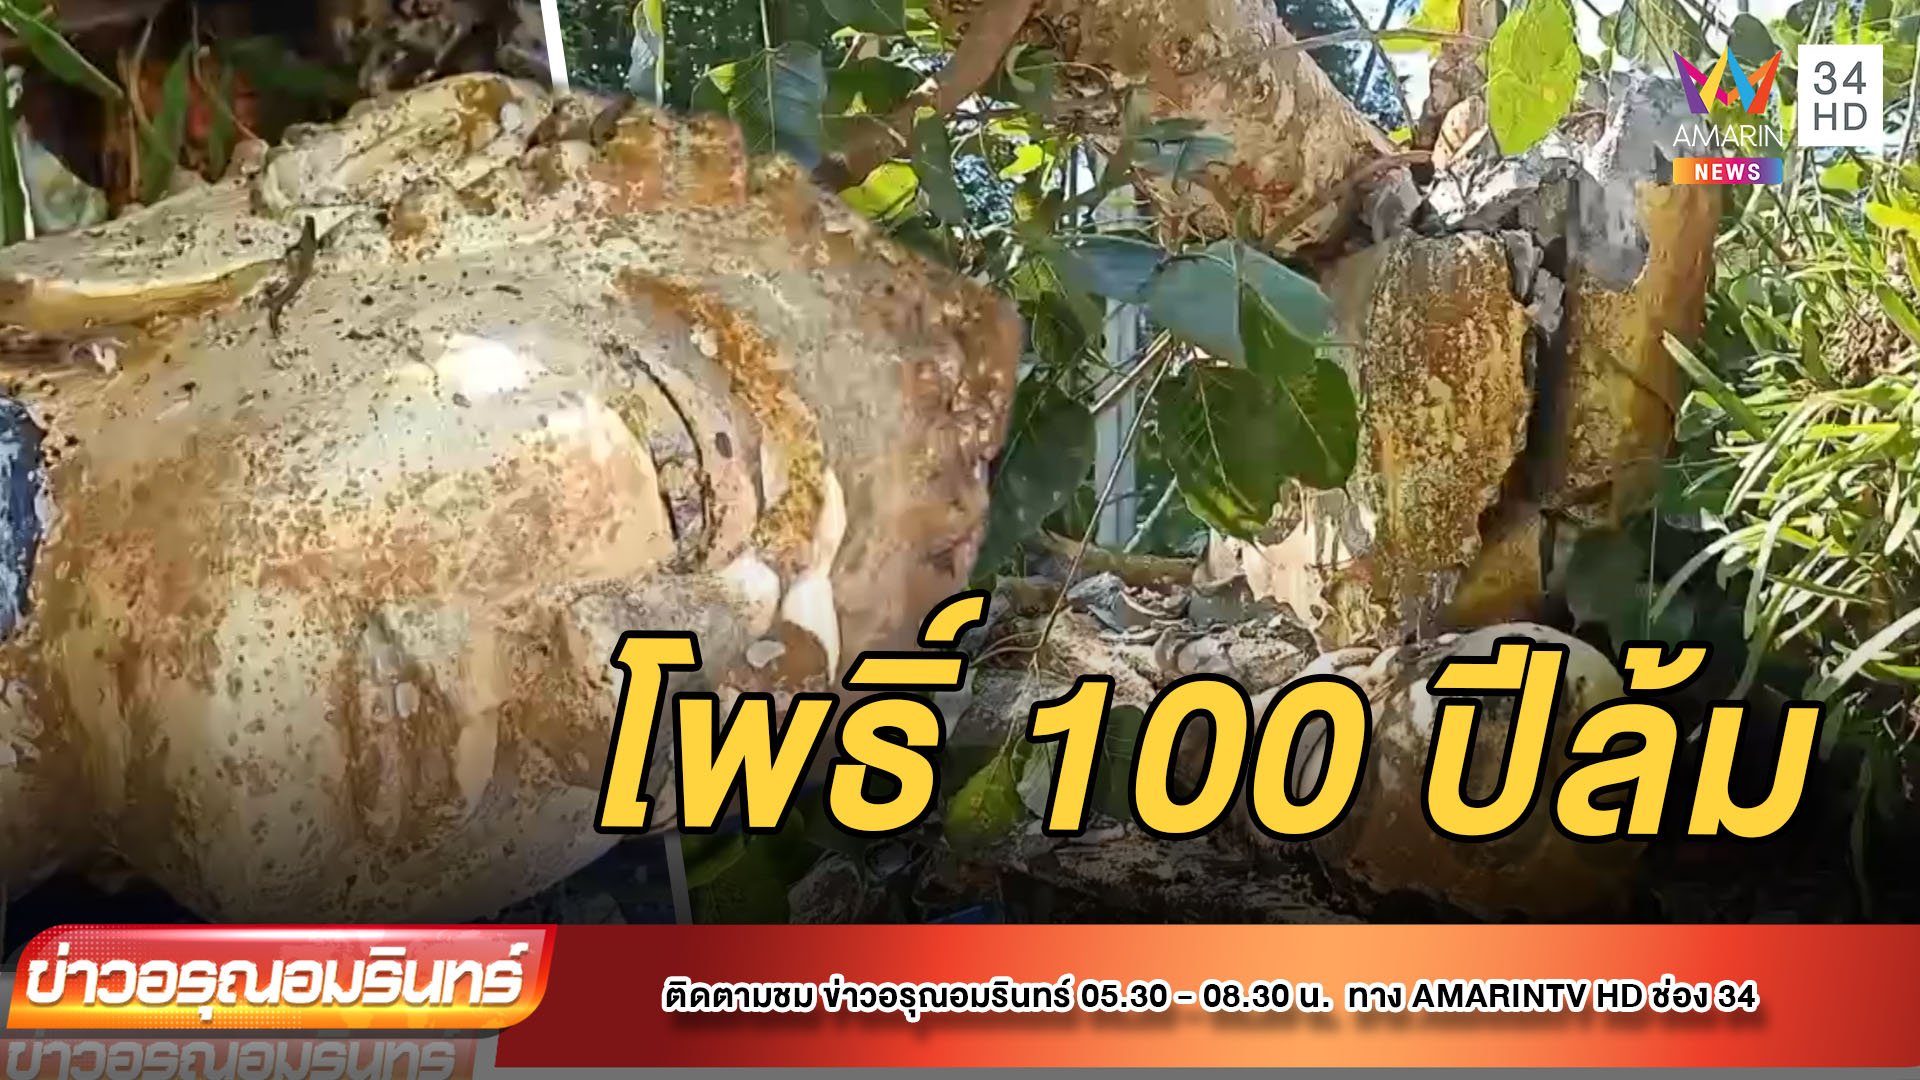 ต้นโพธิ์ อายุ 100 ปี ทับพระพุทธรูป เศียรขาด เรือพัง สูบครึ่งล้าน | ข่าวอรุณอมรินทร์ | 20 ก.ย. 64 | AMARIN TVHD34